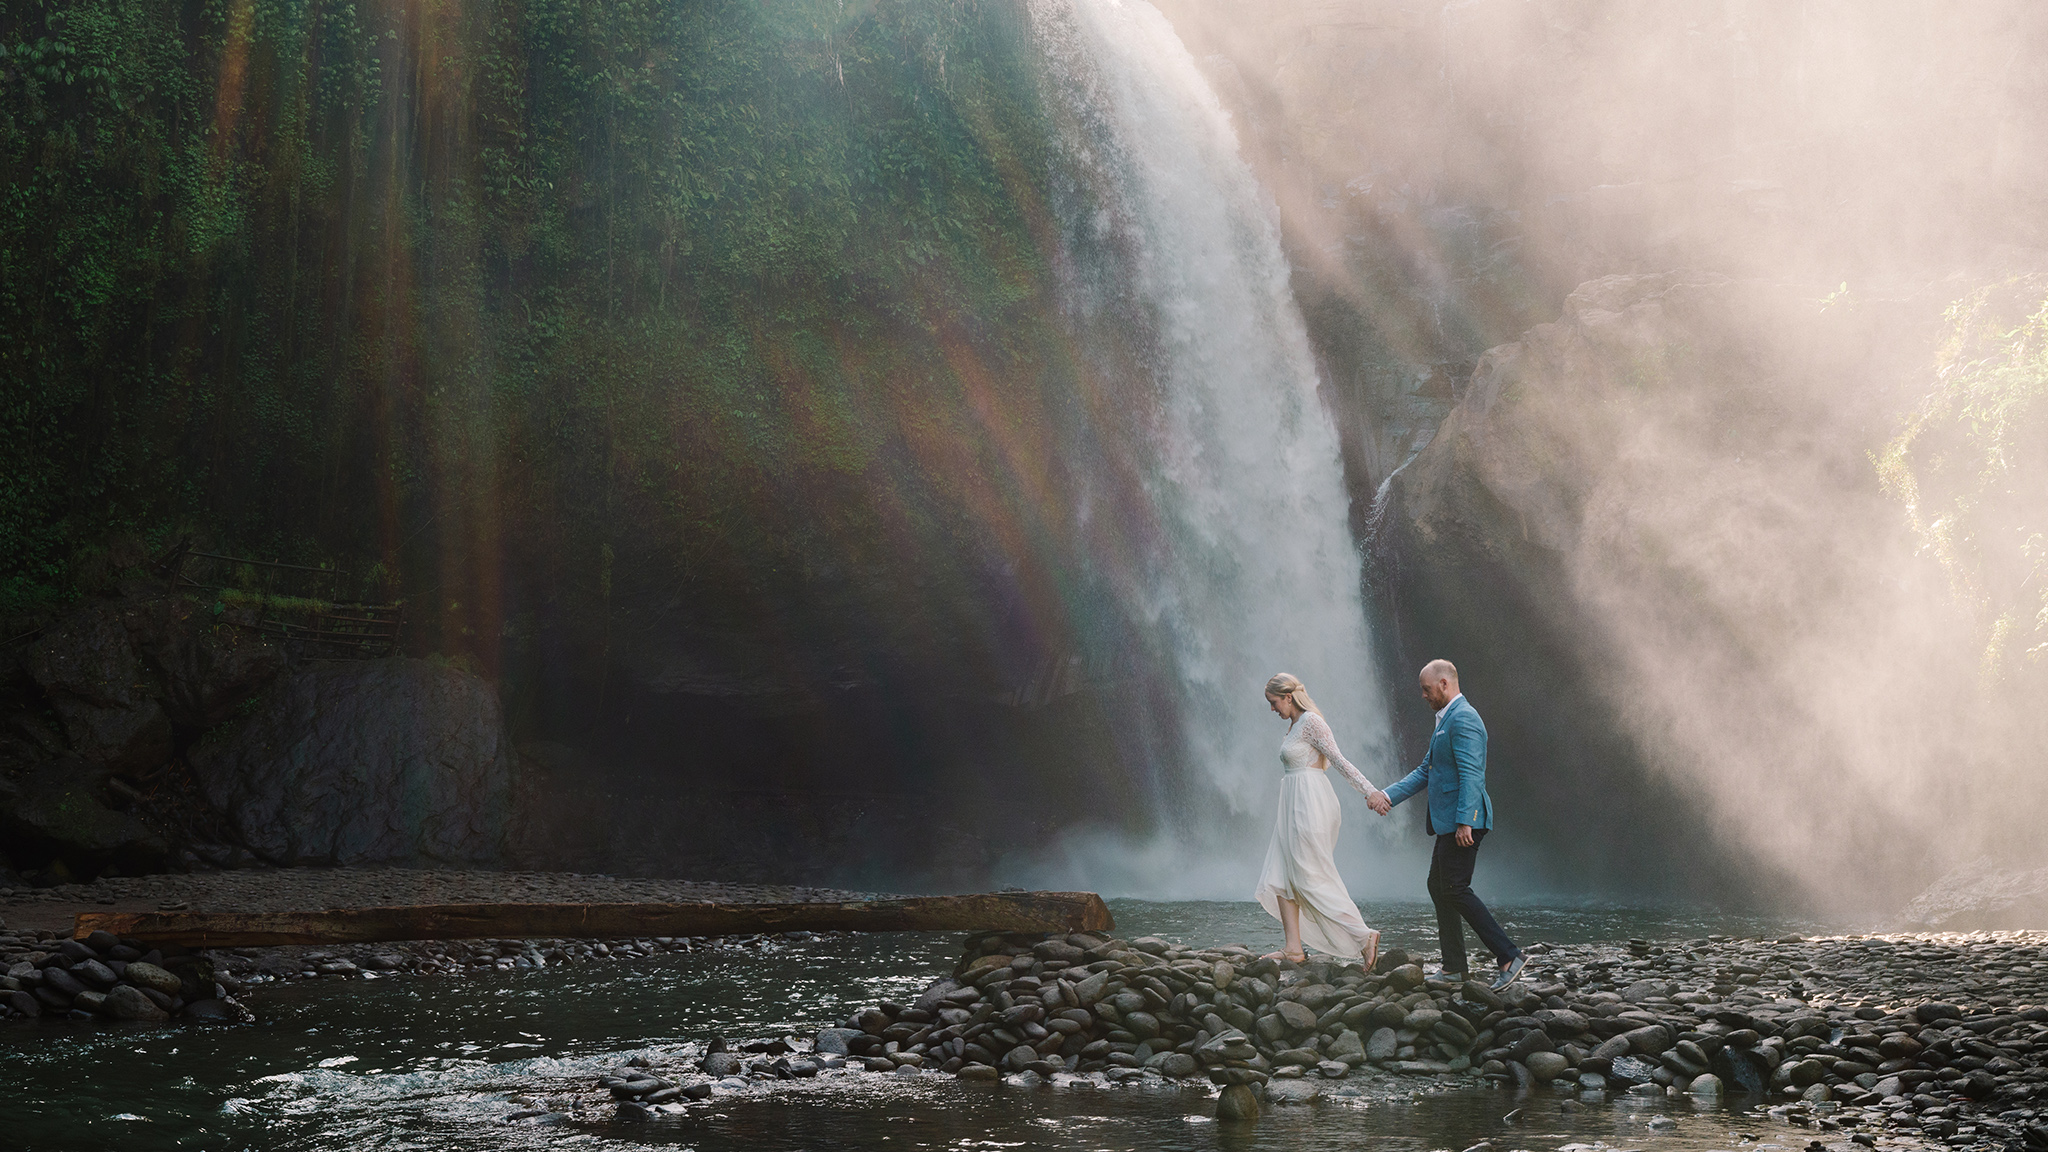 Gusmank Photography - Bali Wedding Photographer